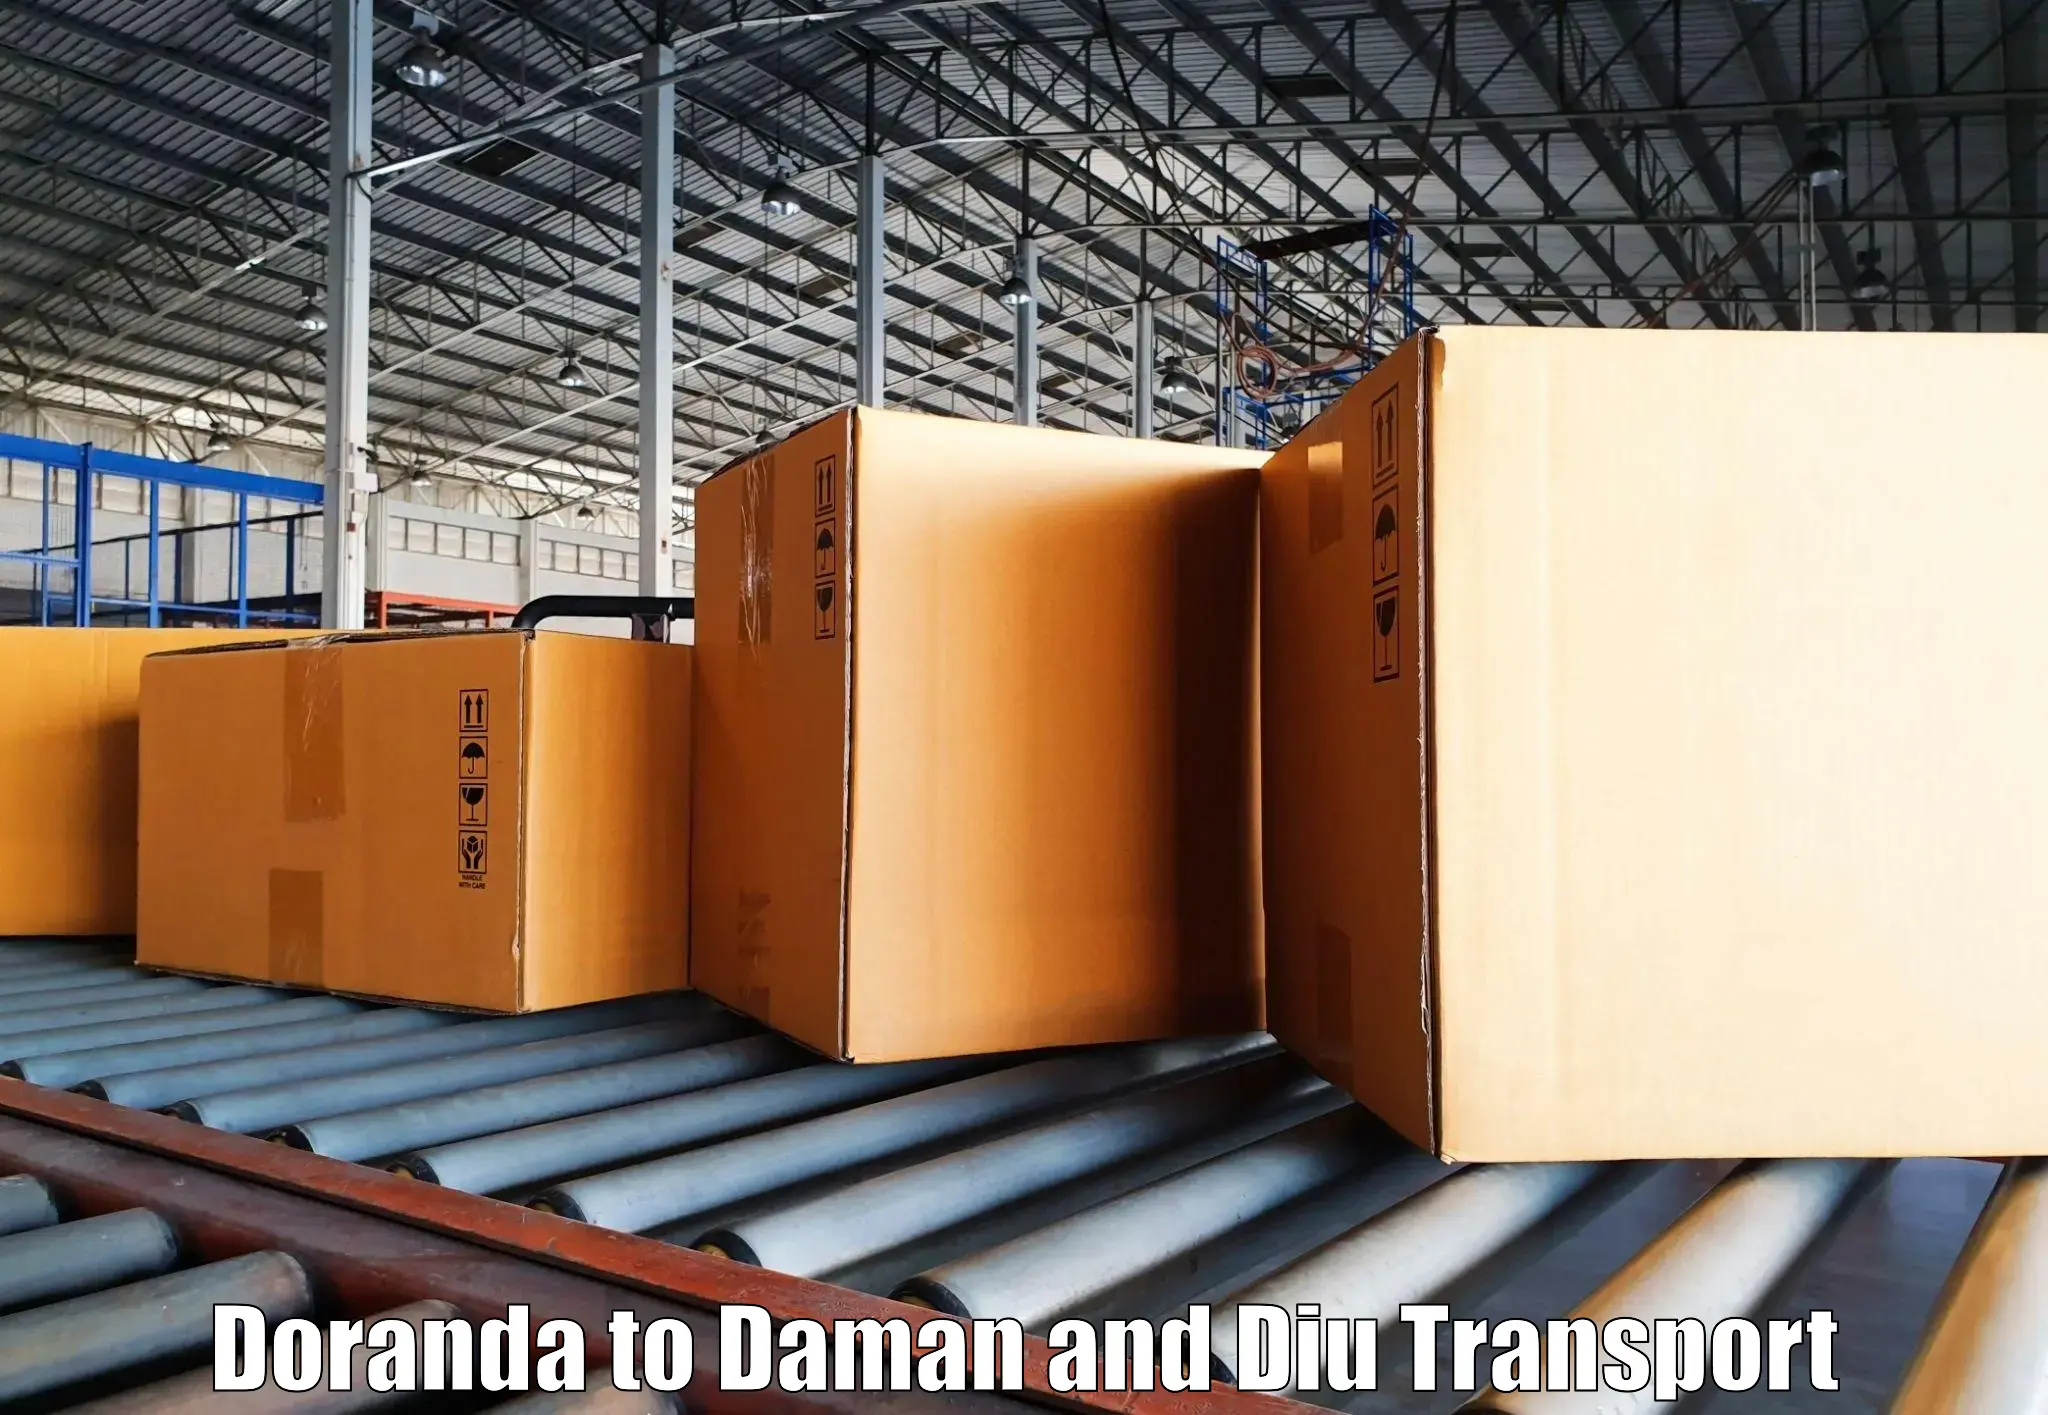 Transport services Doranda to Diu